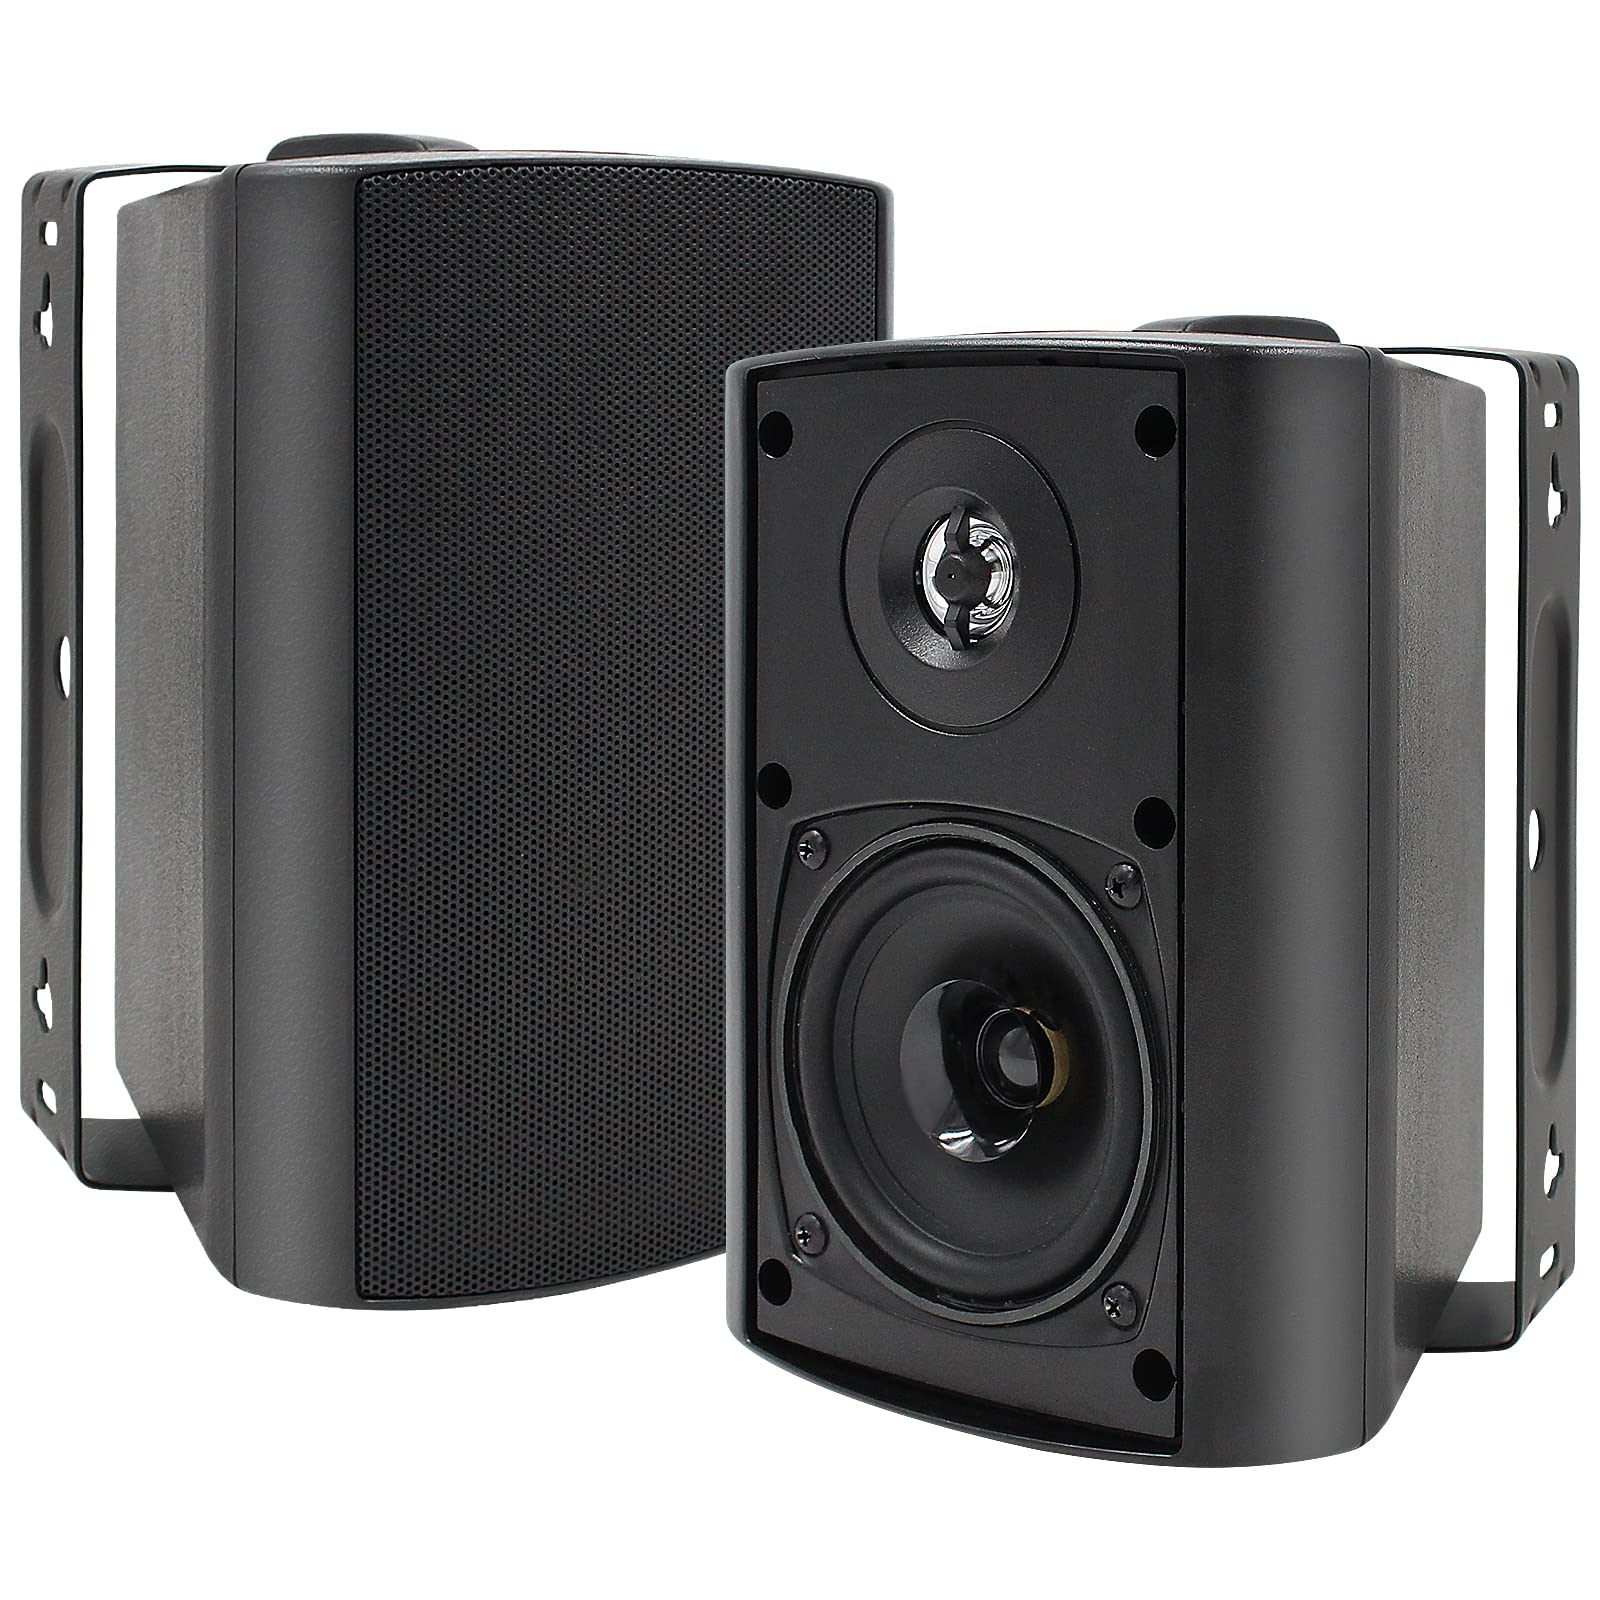 Herdio 5.25 英寸室内室外扬声器无线庭院防水有线壁挂式系统 300 瓦兼容蓝牙 (黑色)